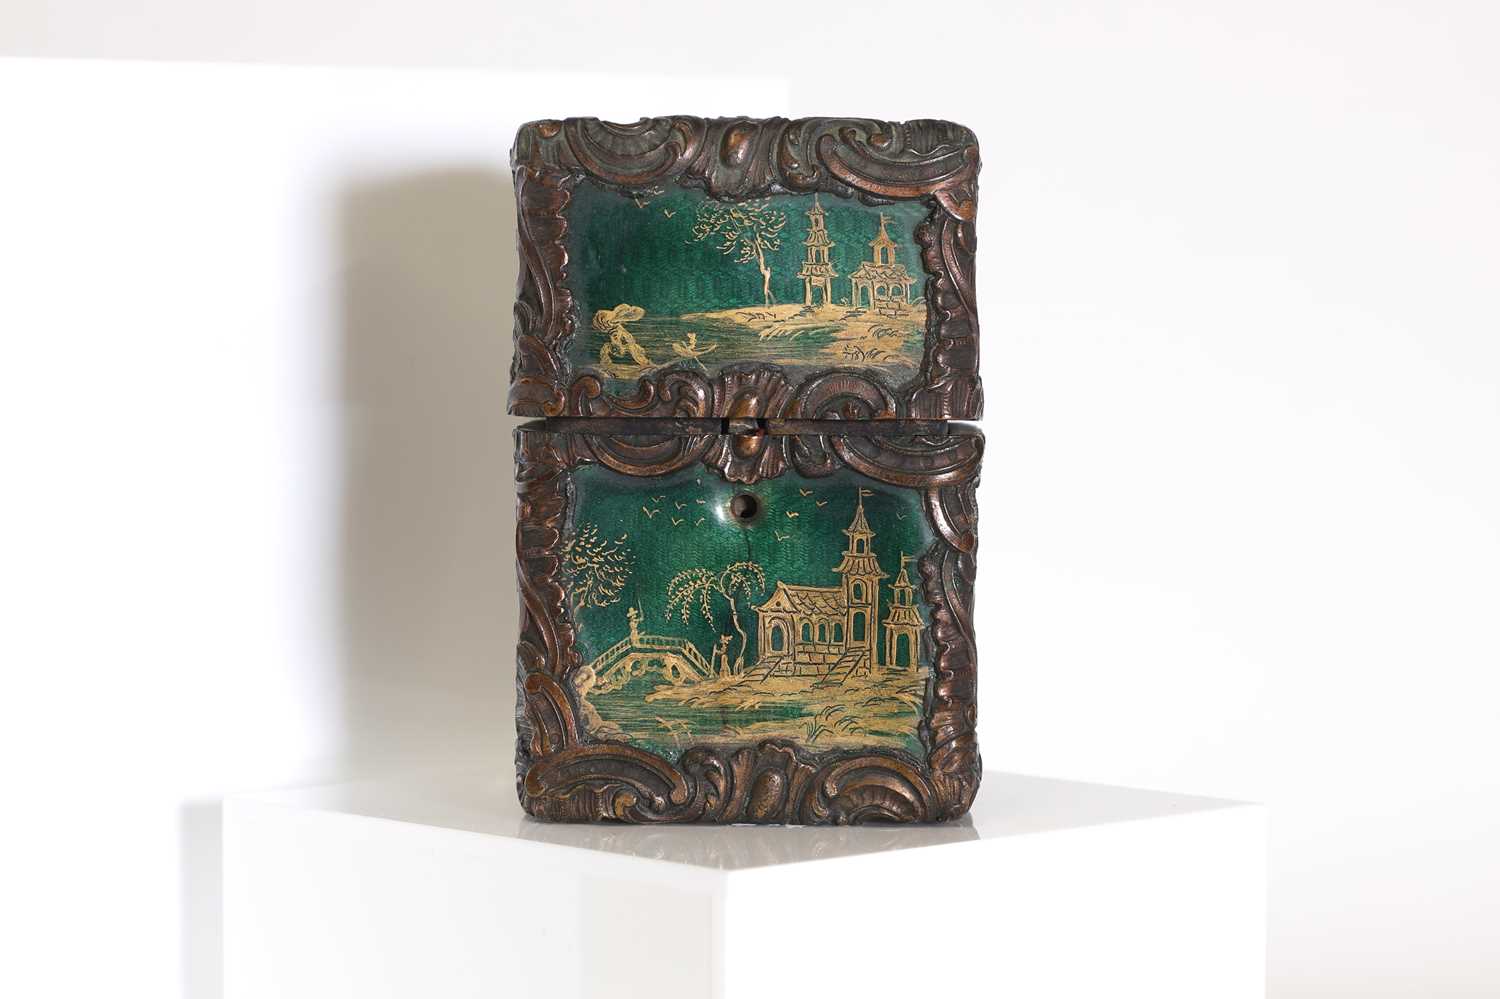 Lot 34 - A Louis XV guilloché enamel and bronze scent bottle case